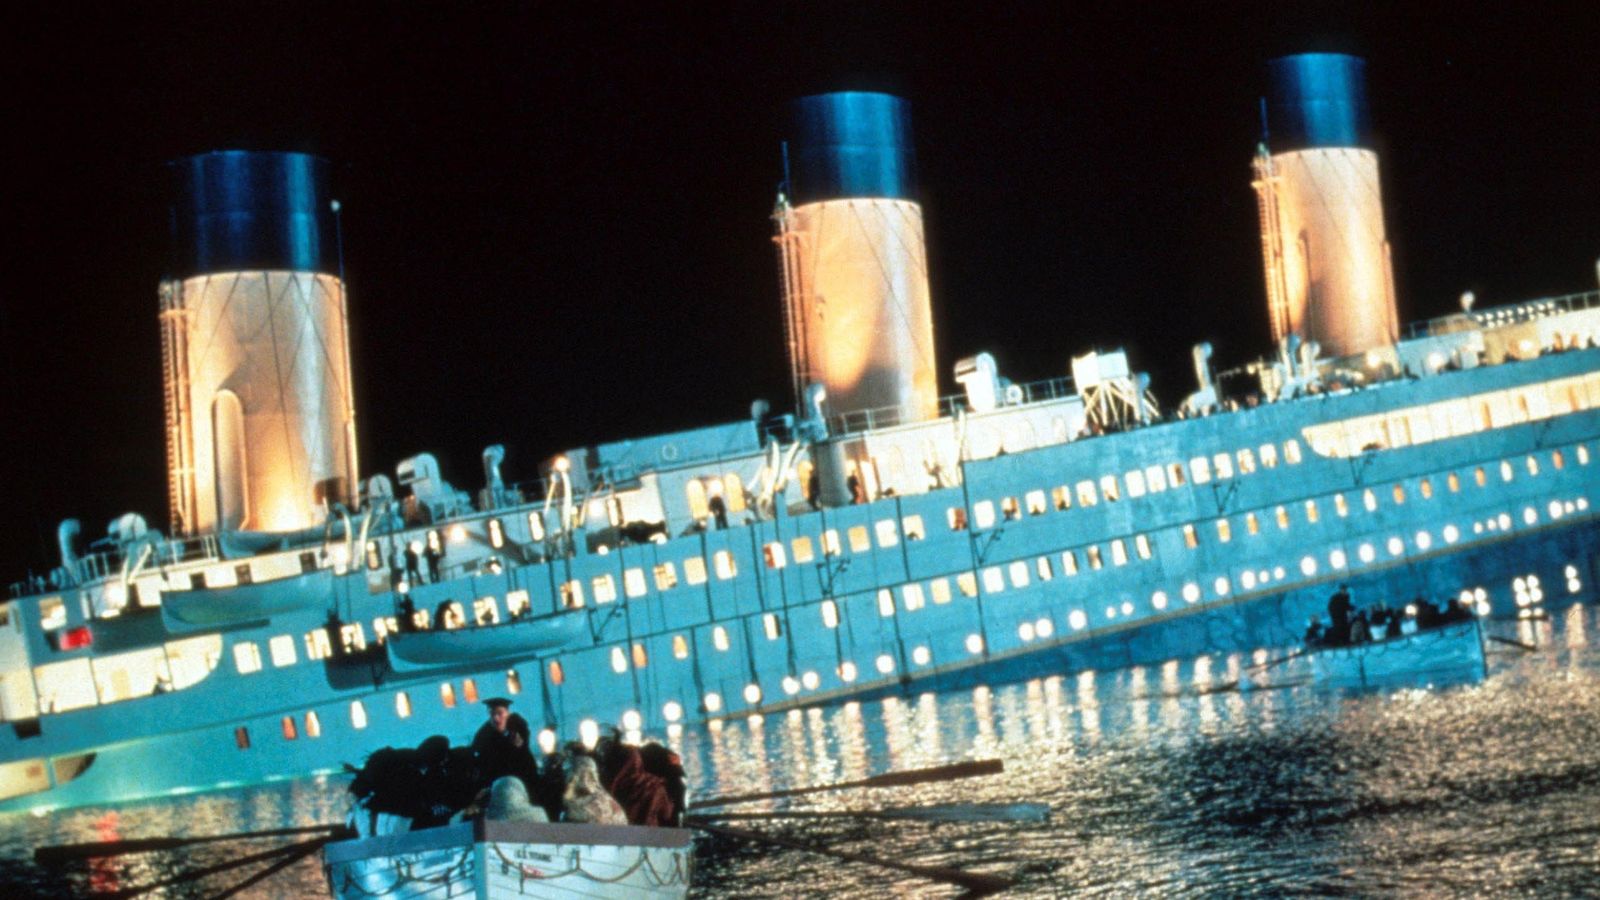 James Cameron: Reżyser „Titanica” obsadził tylko statystów krótszych niż 175 cm w celu cięcia kosztów |  Wiadomości o sztuce i sztuce